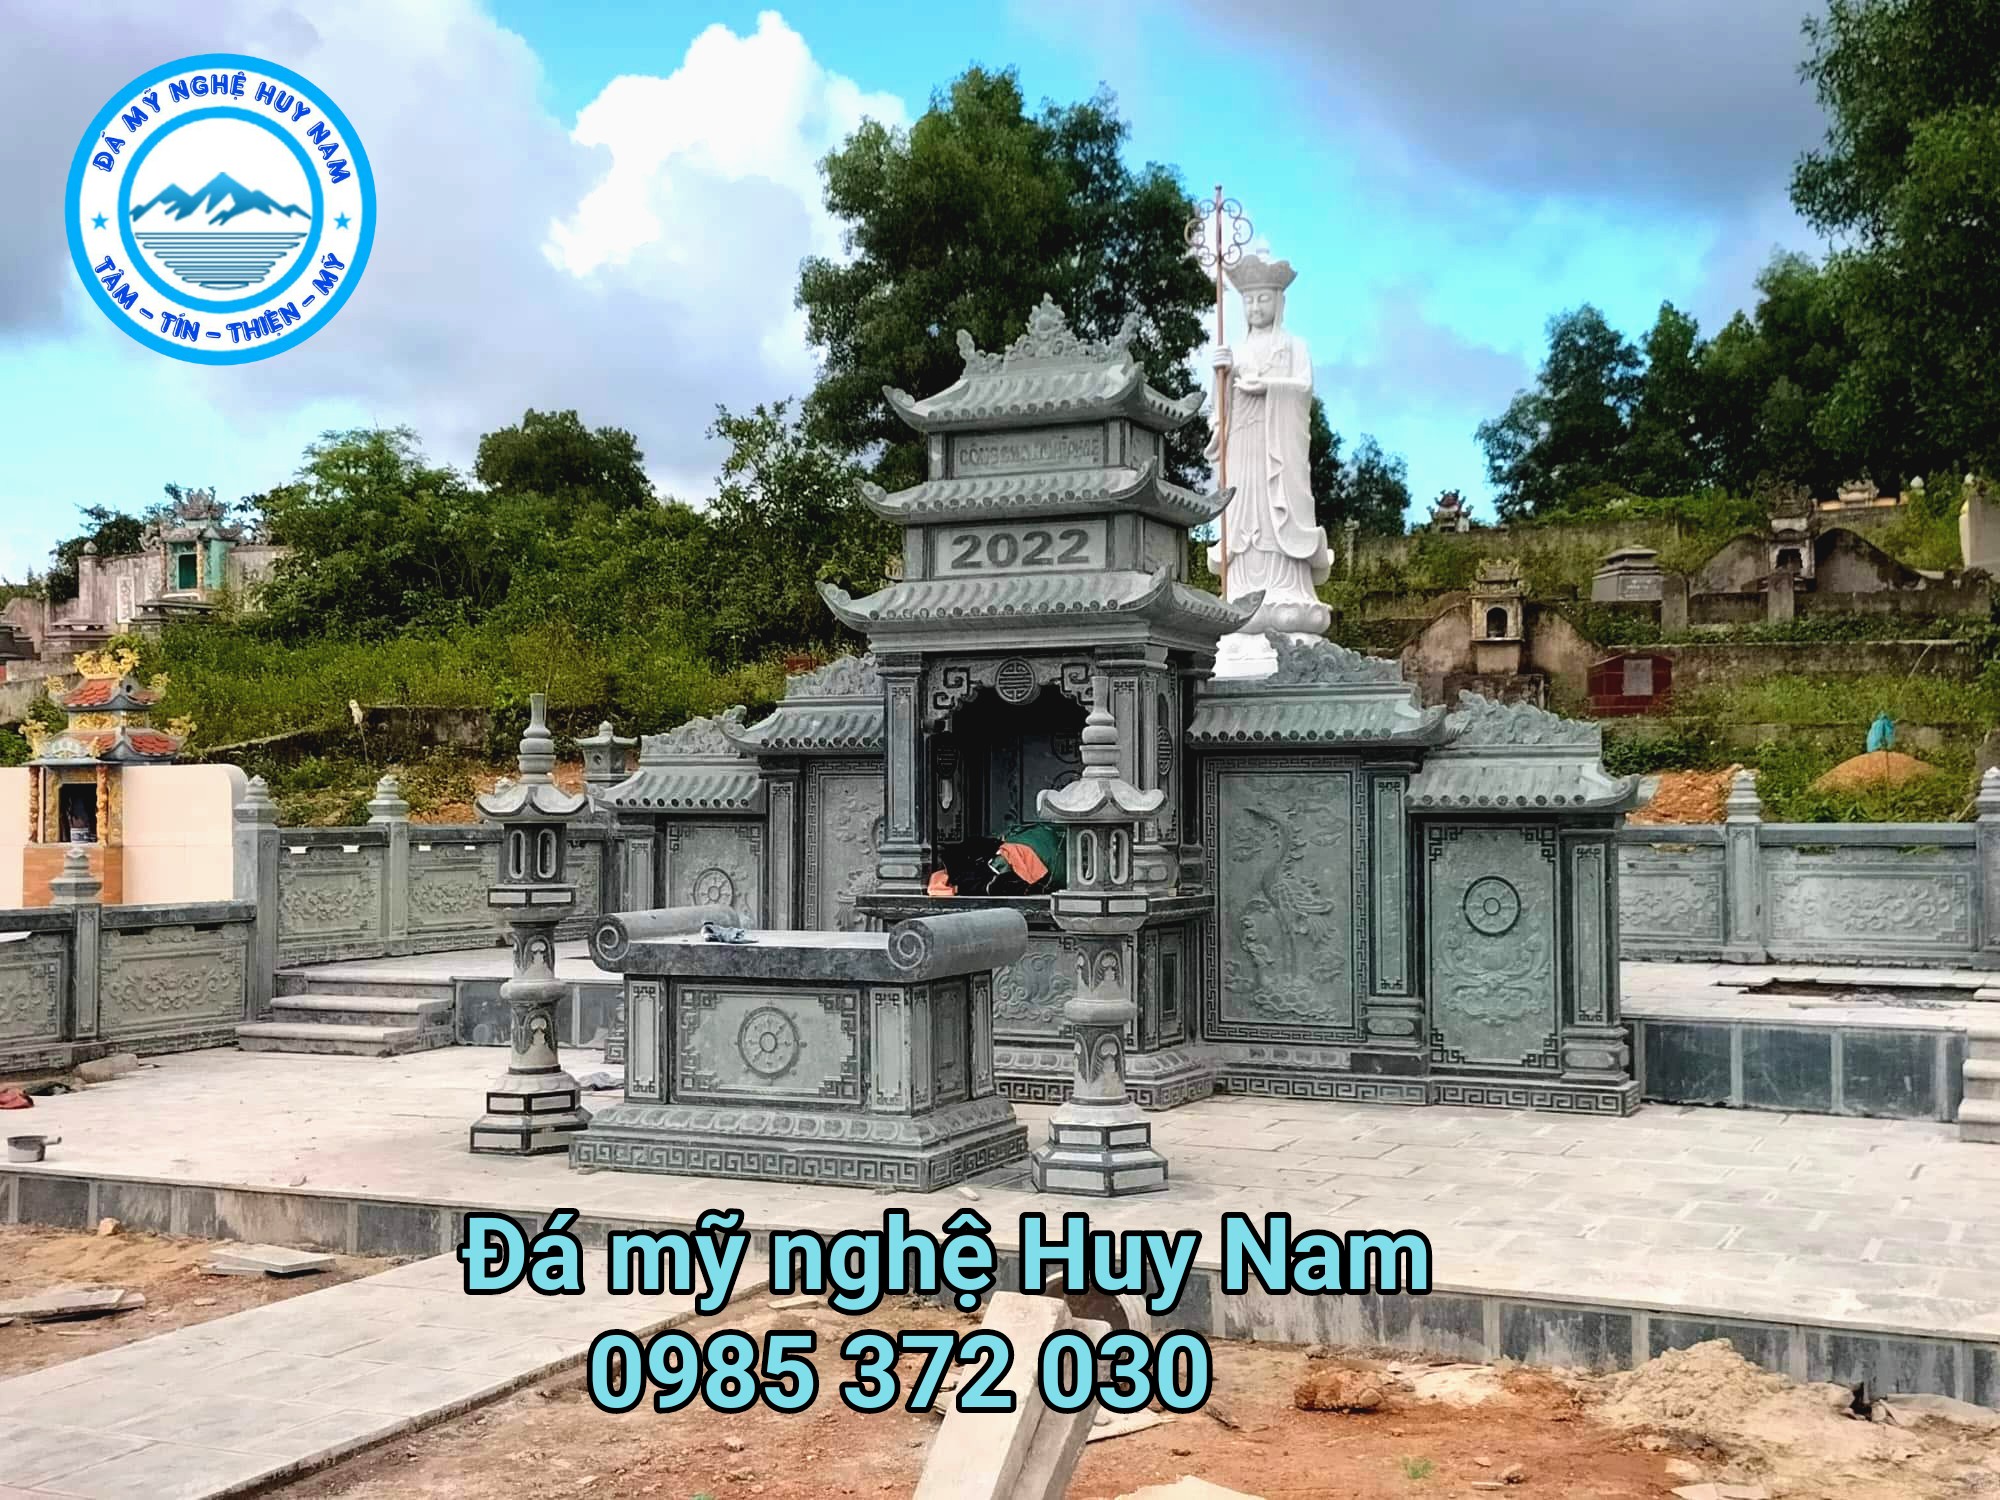 Lăng mộ 3 mái bằng đá xanh rêu đẹp- Đá mỹ nghệ Huy Nam